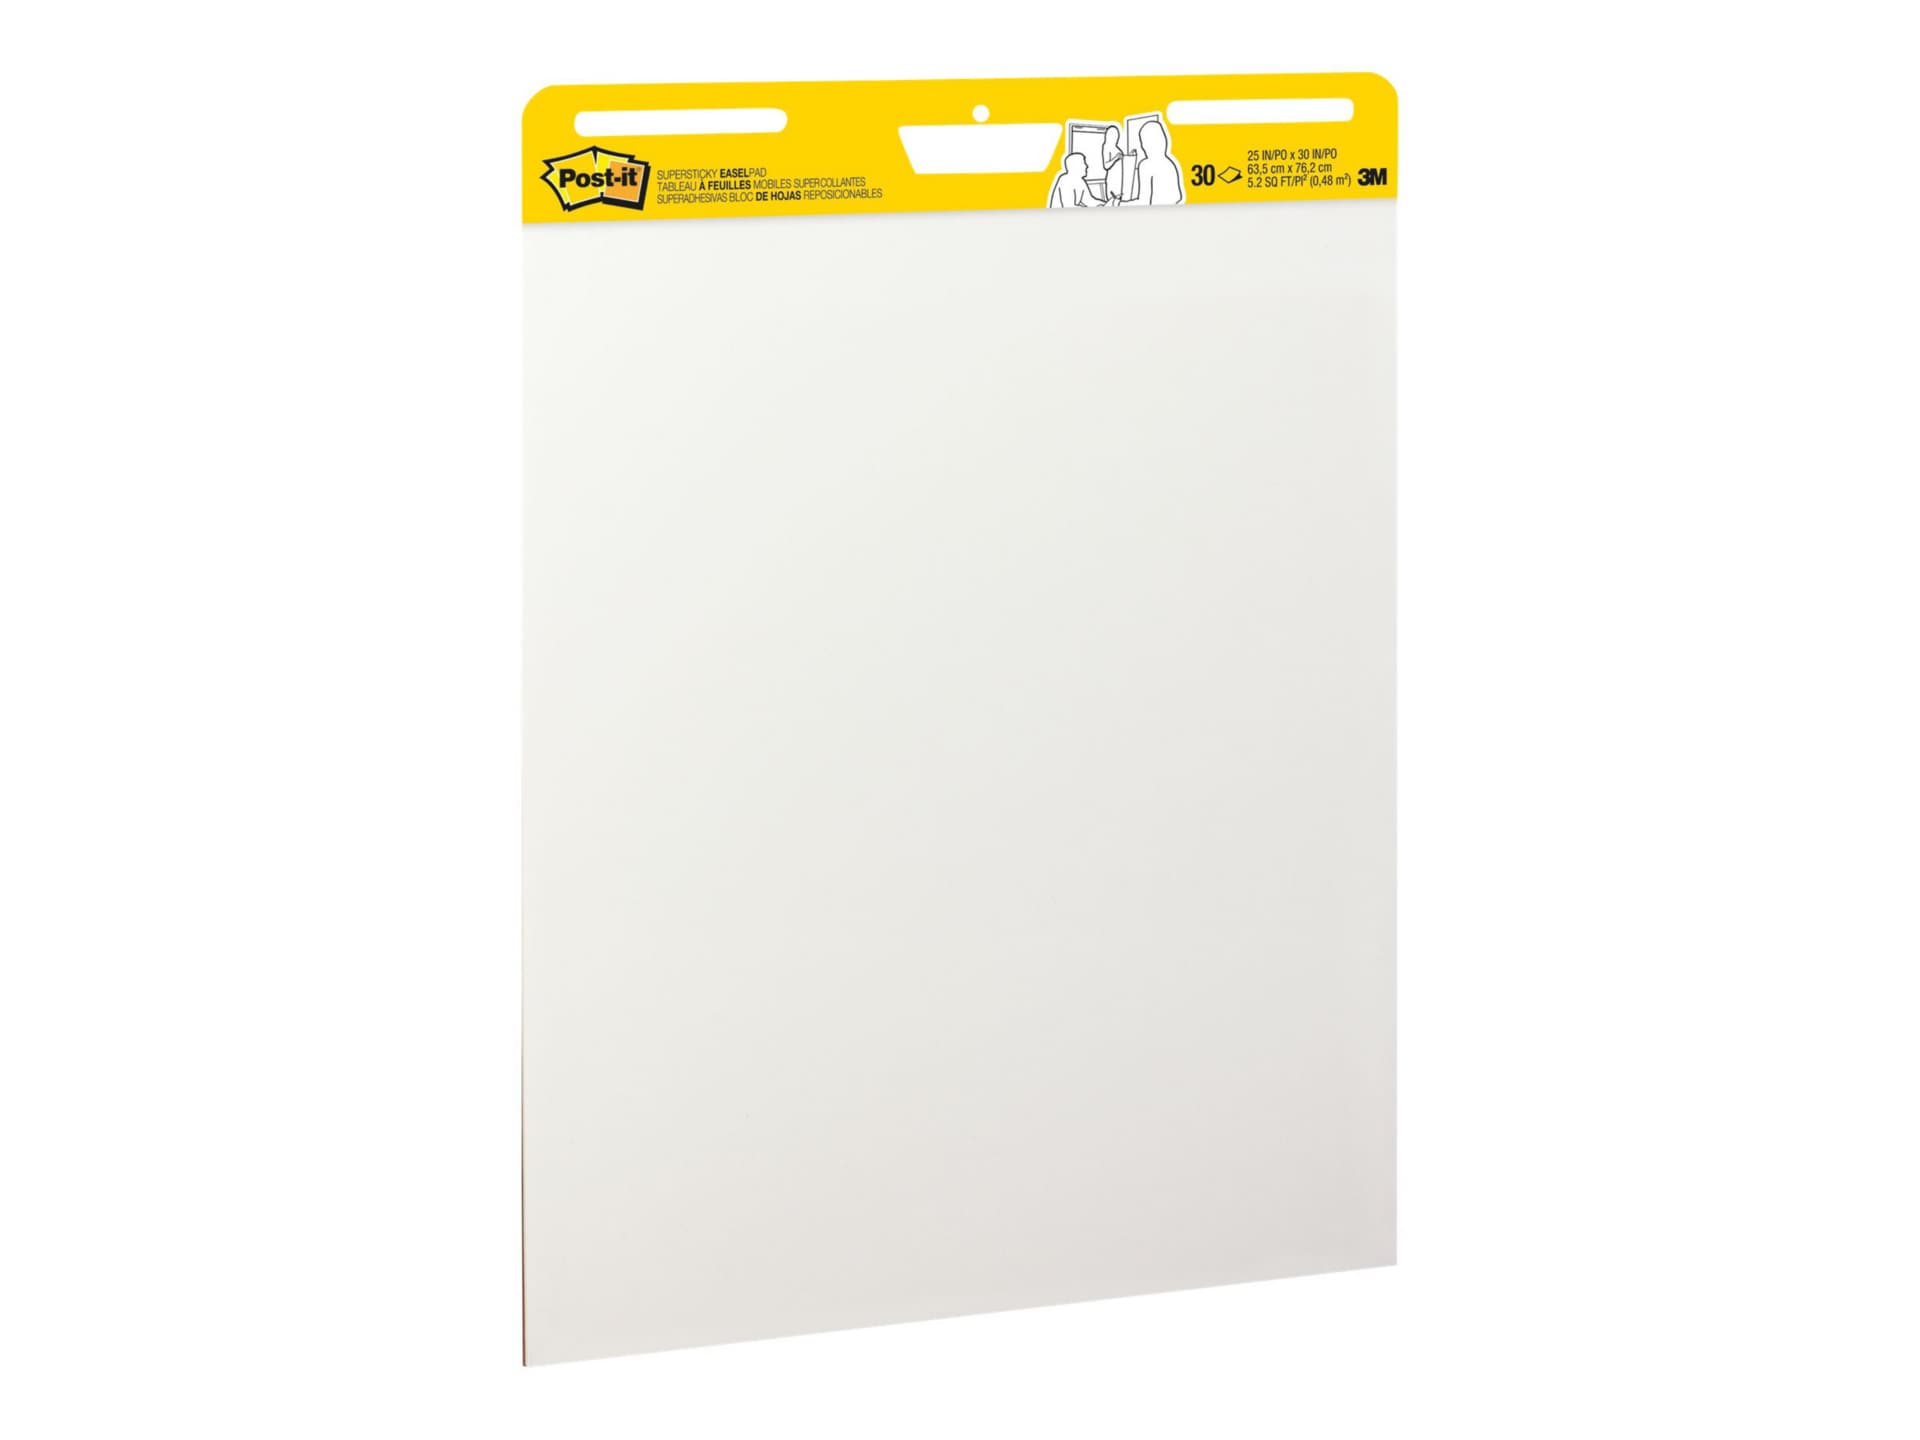 Post-it Easel Pad 559 - flip chart pad